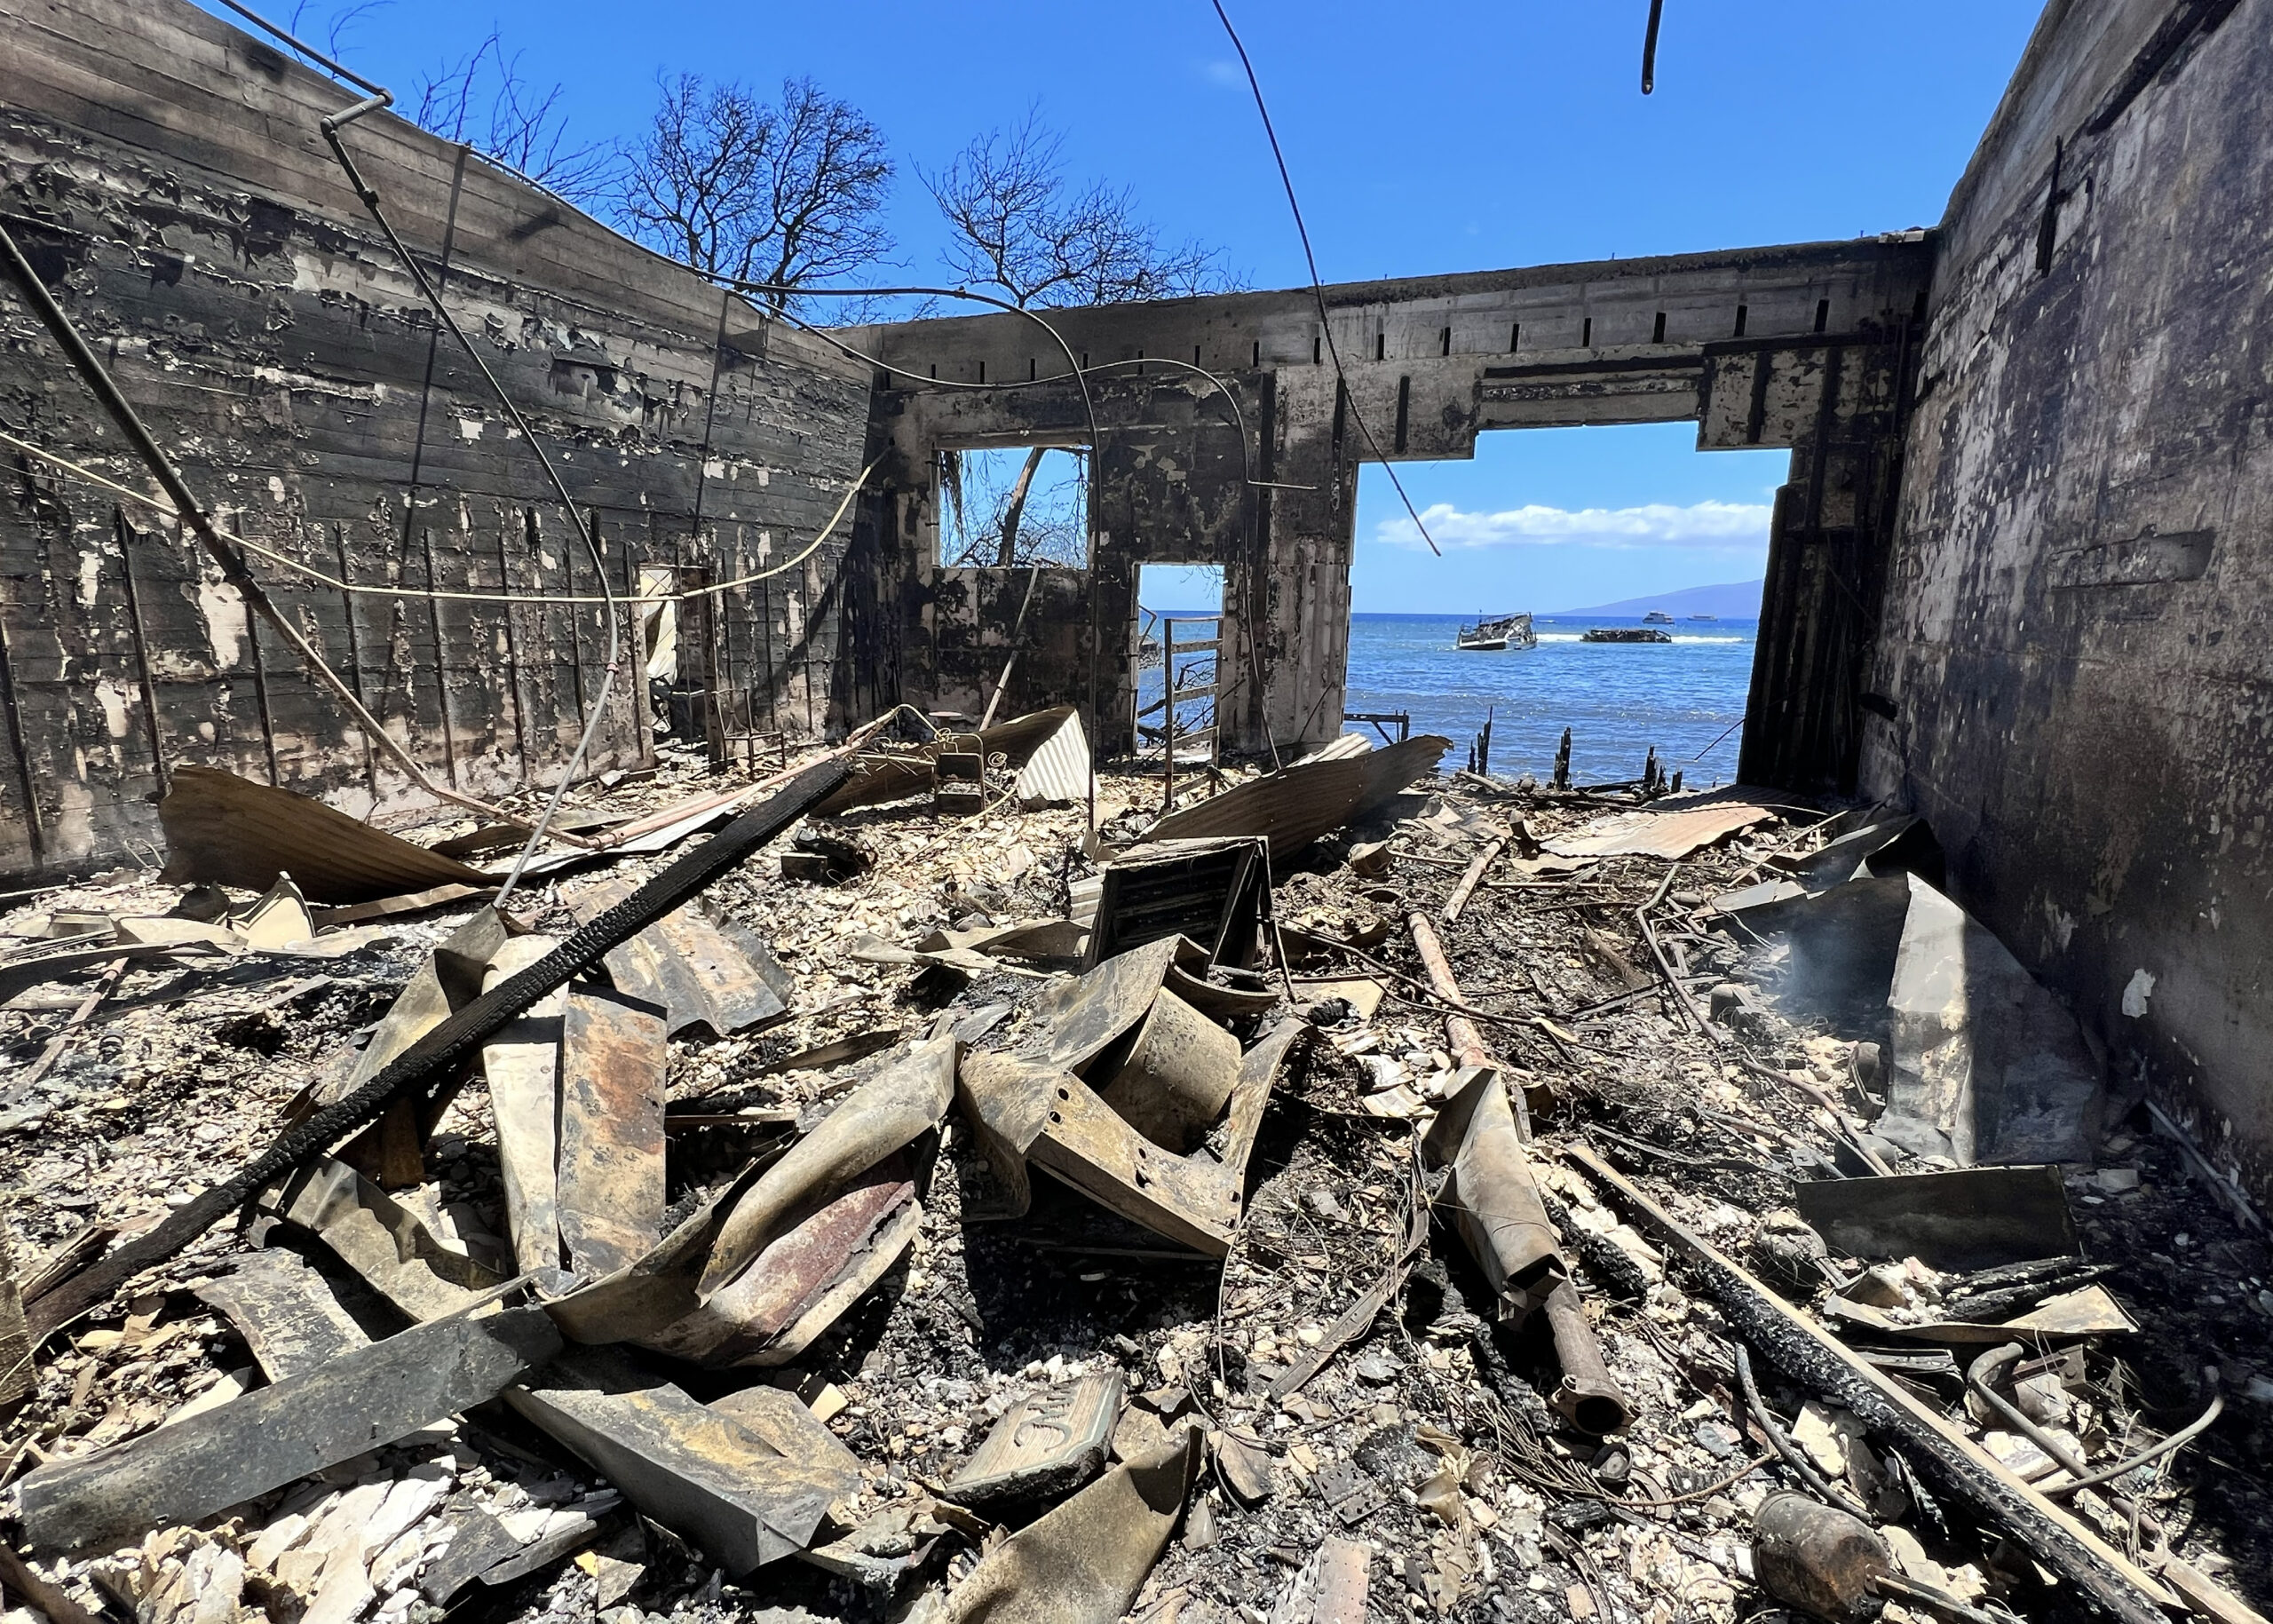 Θ. Γιάνναρος, πυρομετεωρολόγος: Σε Μάουι και Μάτι δημιουργήθηκαν καταβάτες άνεμοι που προκάλεσαν τις καταστροφικές πυρκαγιές